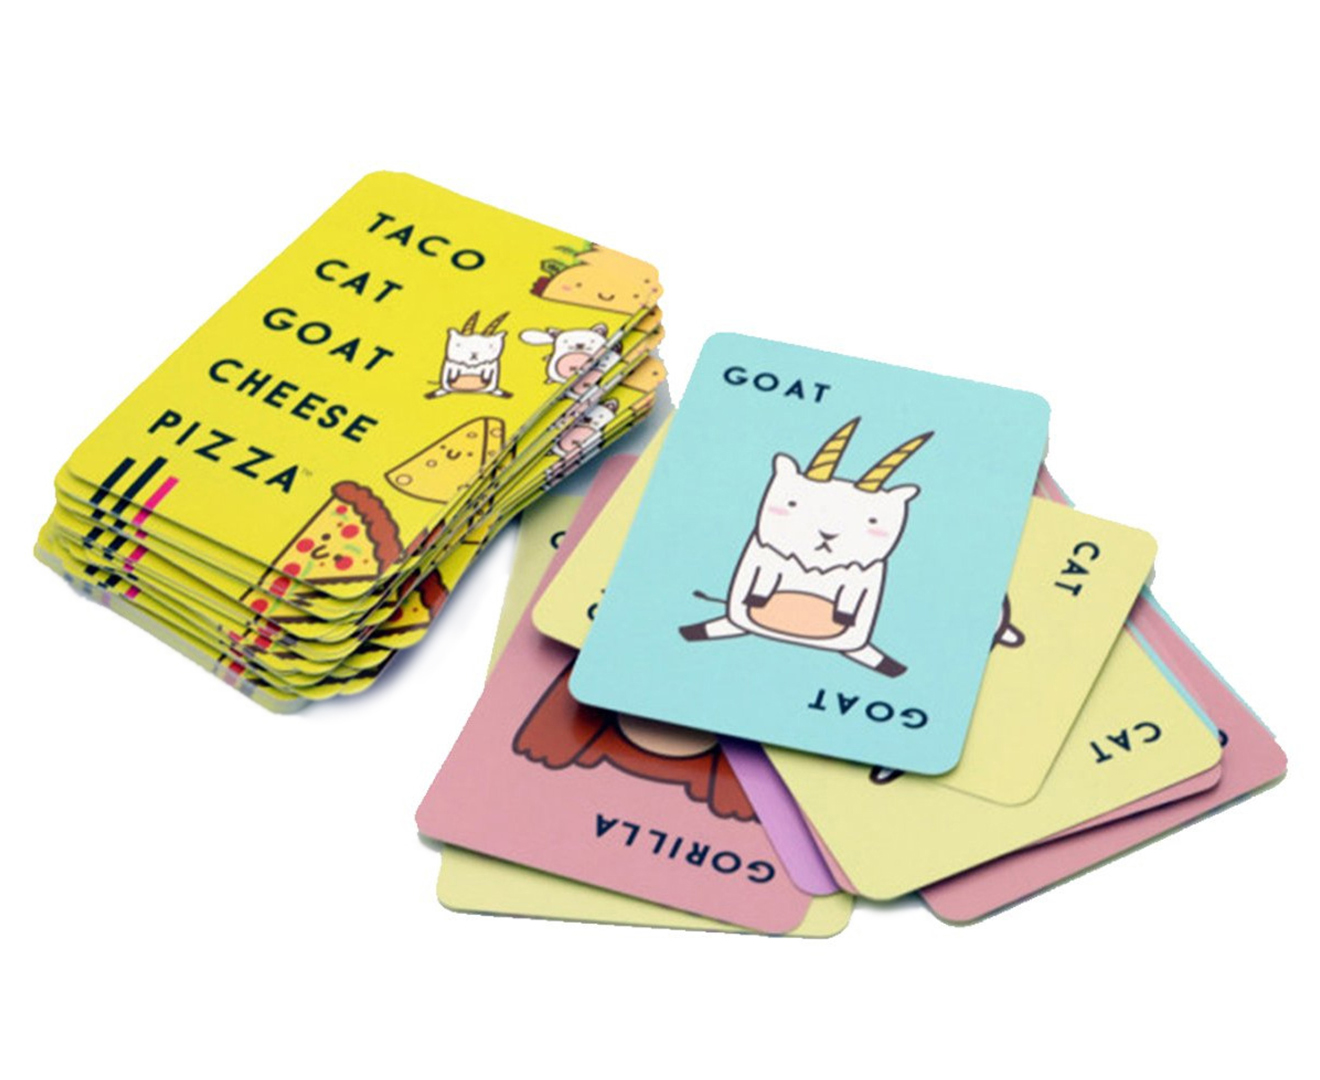 Taco! Cat! Goat! Cheese! Pizza! Card Game | Catch.com.au